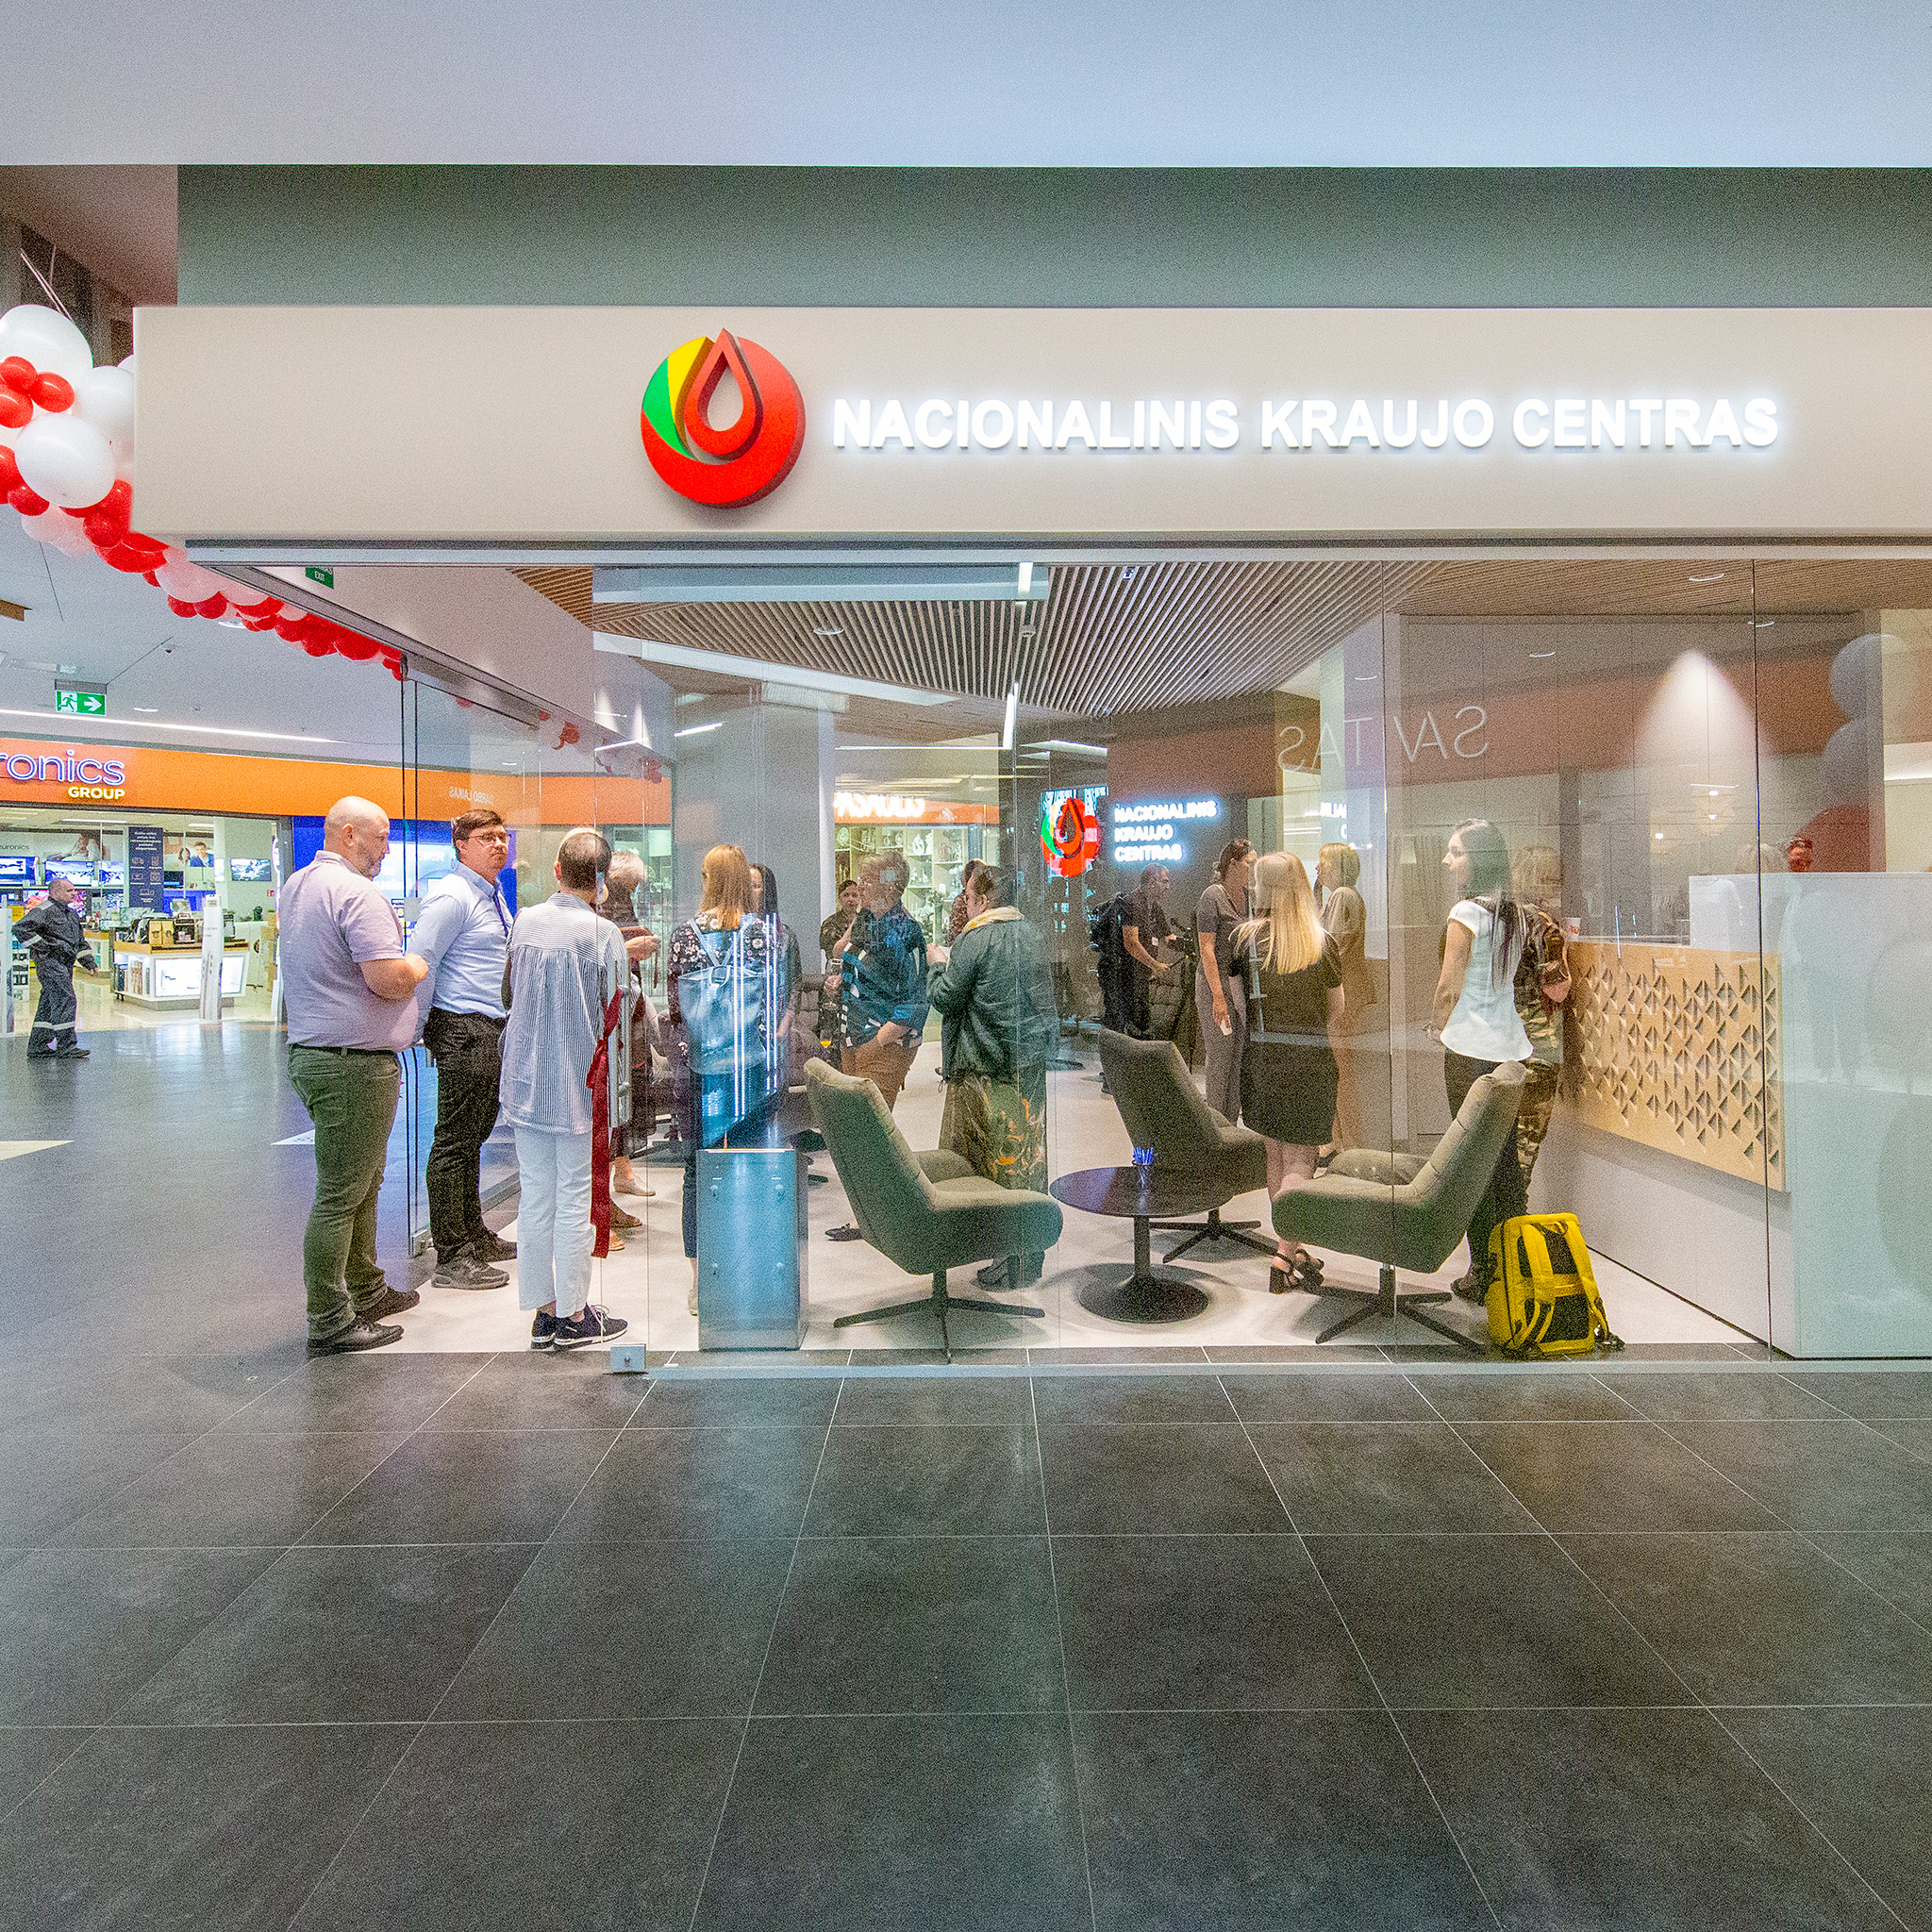 Prekybos centras CUP kviečia duoti kraujo moderniose, atsinaujinusiose NKC patalpose